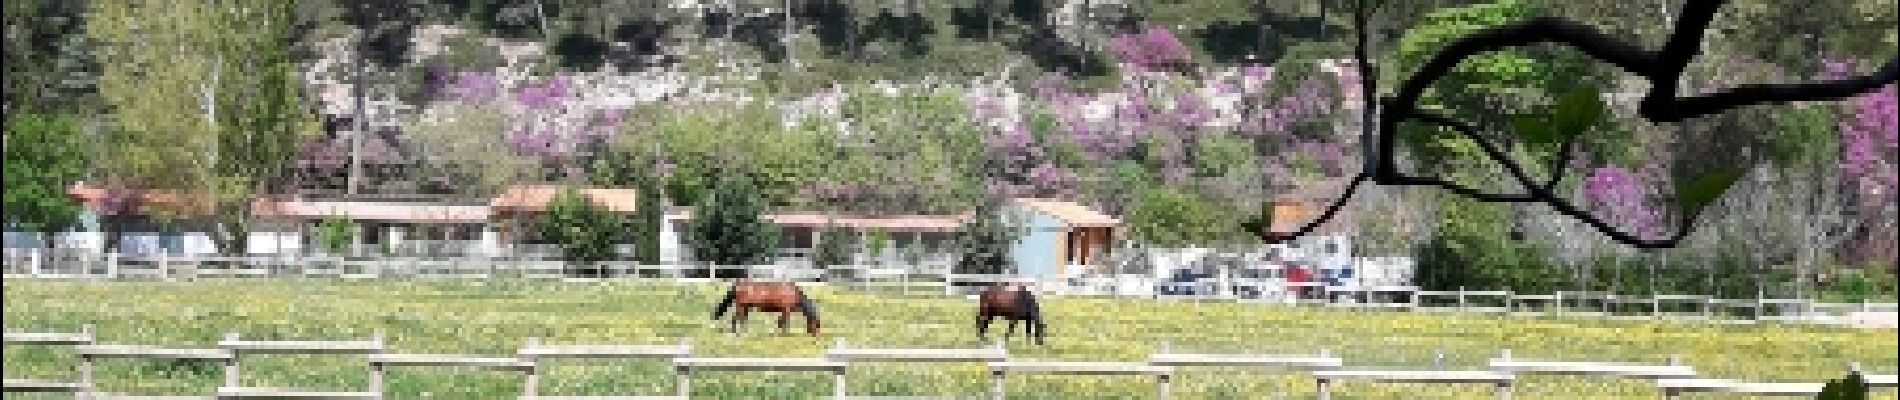 POI Gémenos - les chevaux des garde du parc - Photo